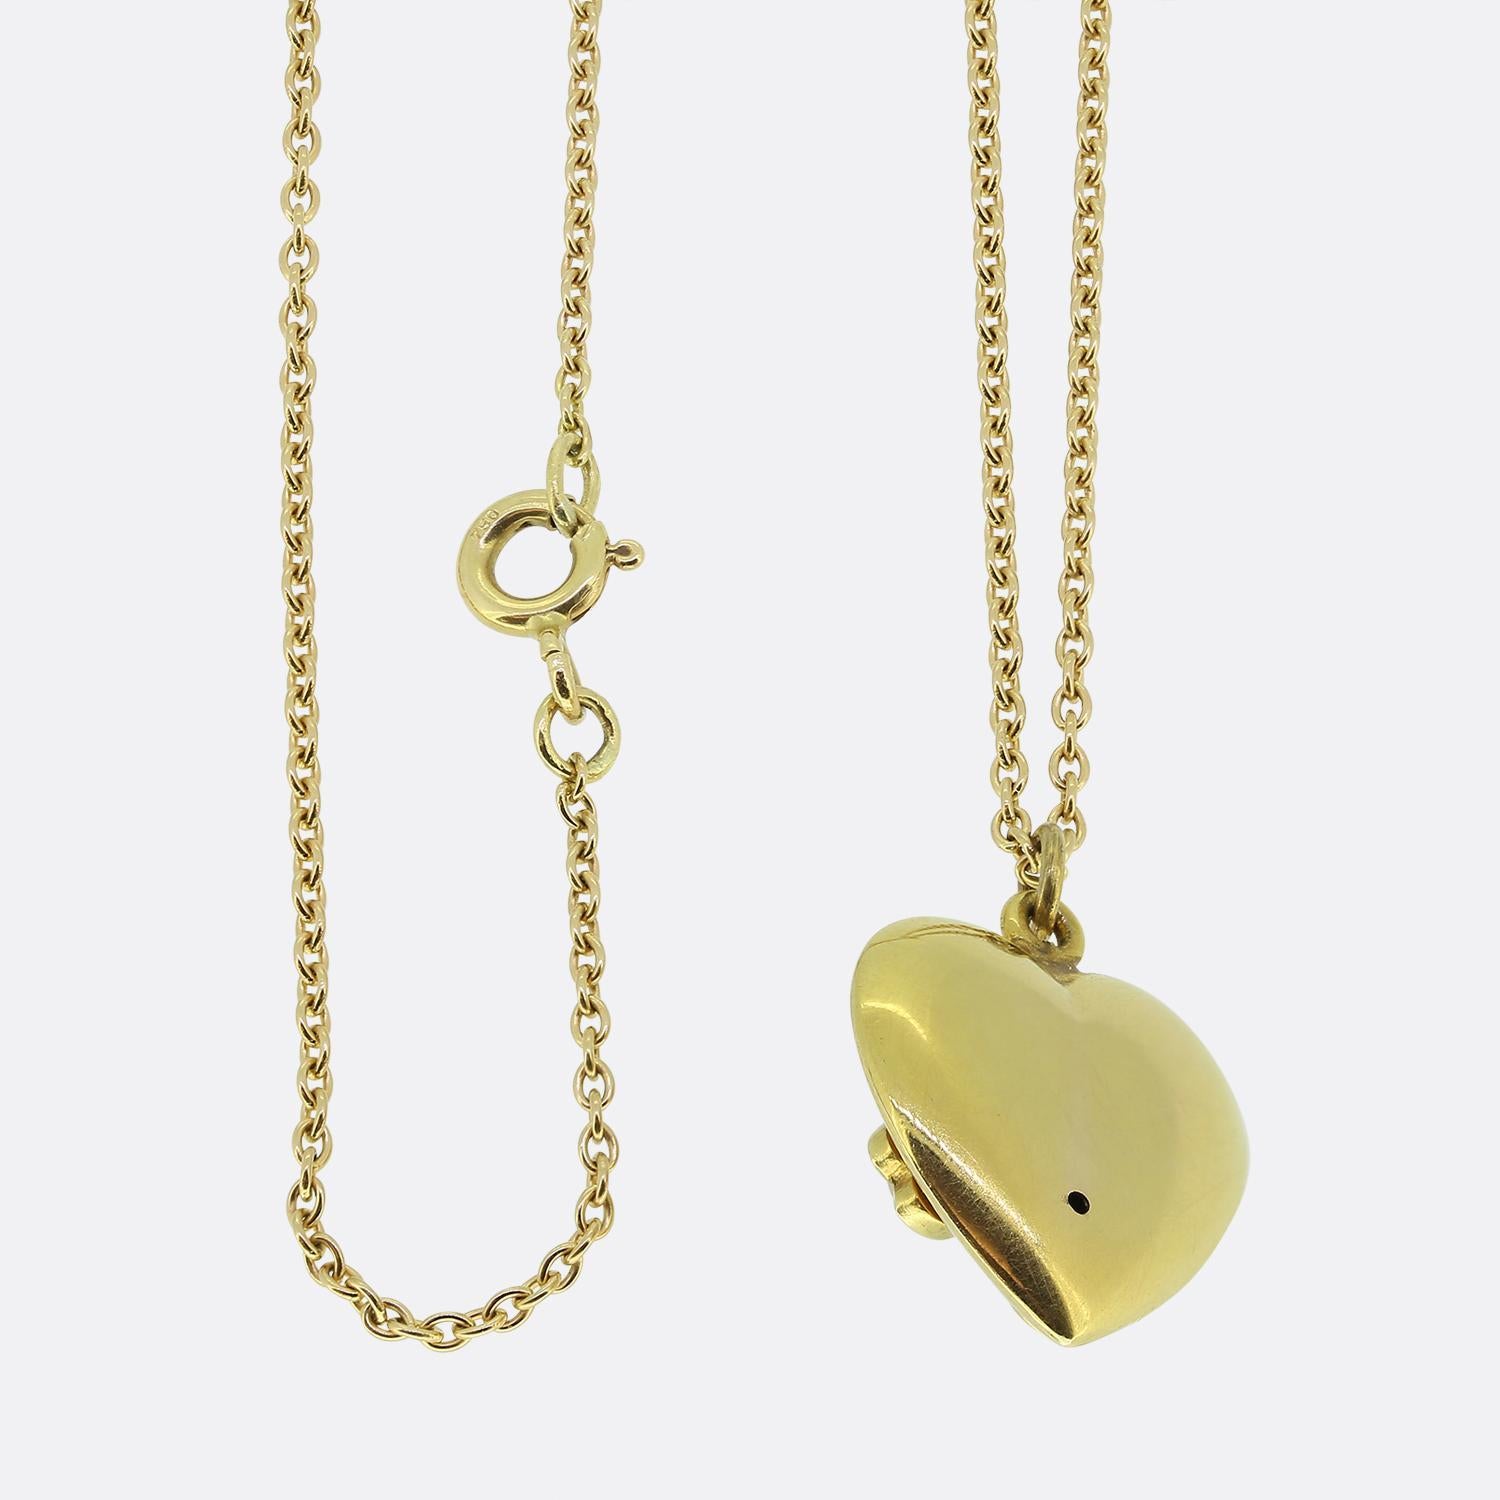 Nous avons ici un magnifique collier à pendentifs en perles. Ce pendentif a été réalisé en or jaune 18 ct en forme d'étoile.  cœur d'amour. La pièce est ensuite sertie d'un quatuor de perles, dont trois imitent les pétales d'un trèfle, tandis que la